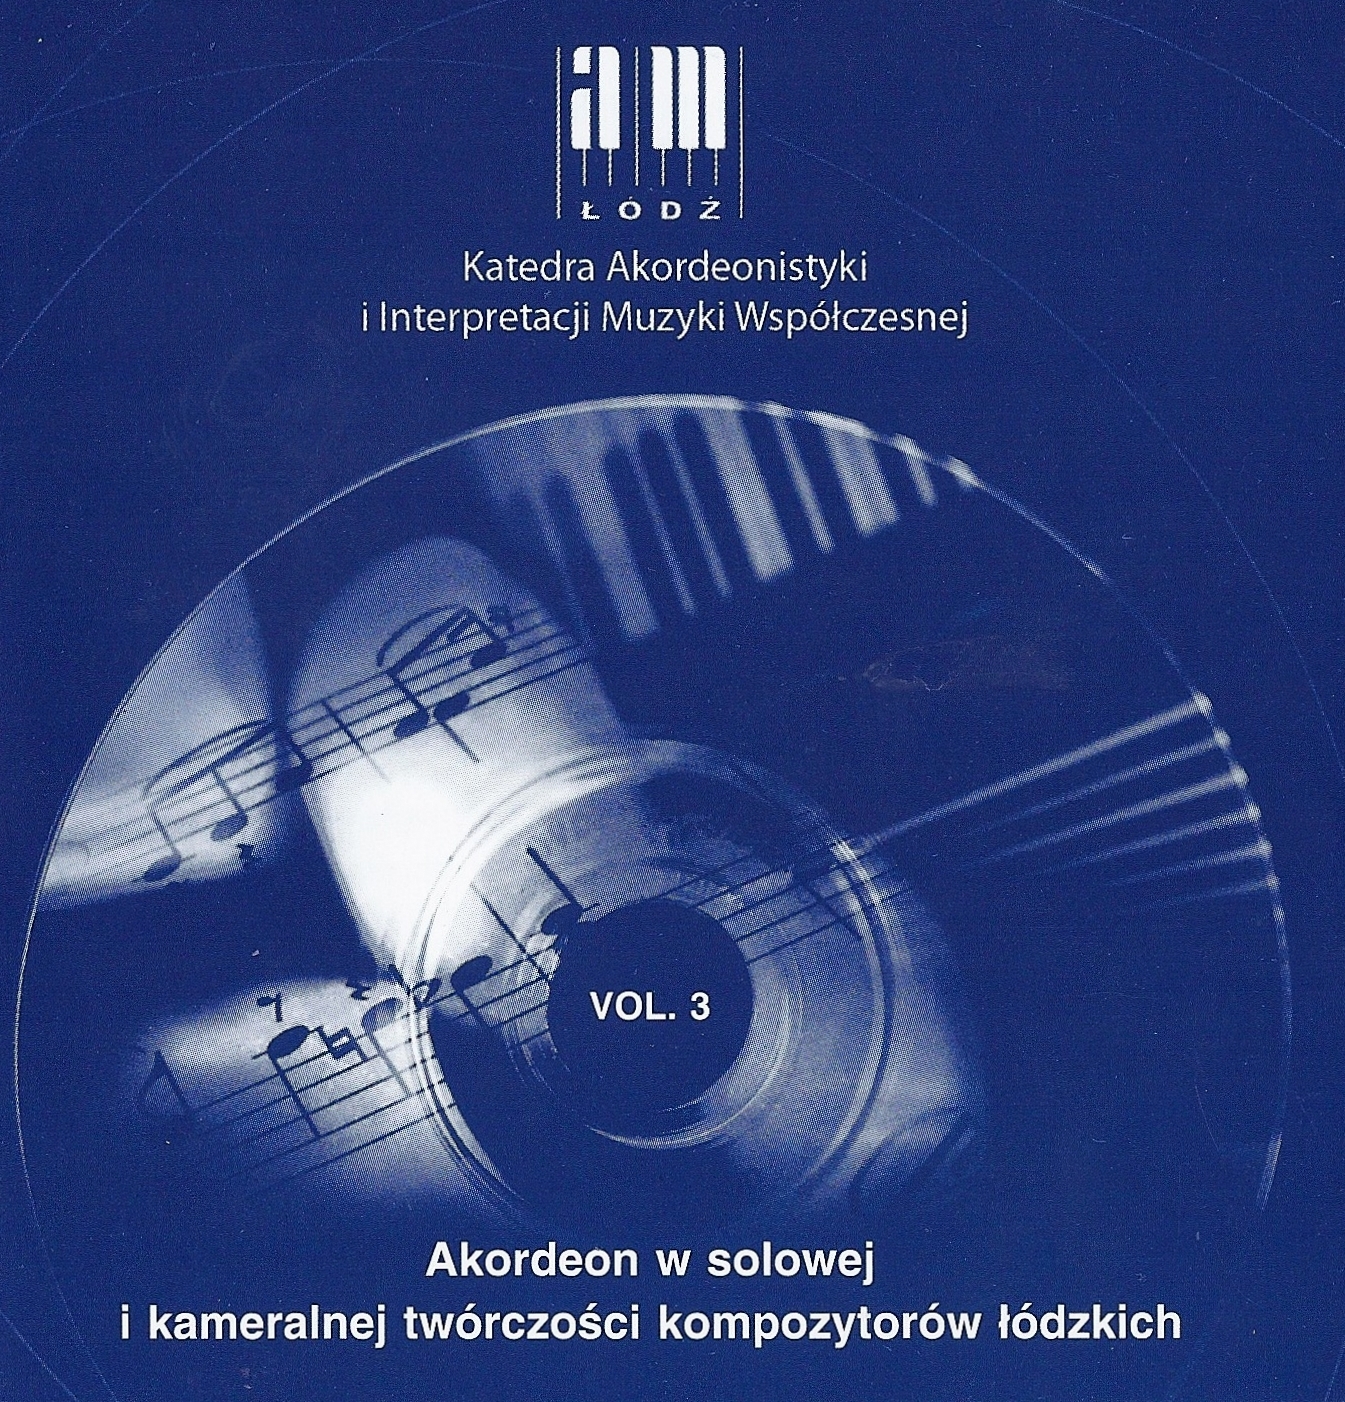 Akordeon w solowej i kameralnej twórczości kompozytorów łódzkich, vol. 3